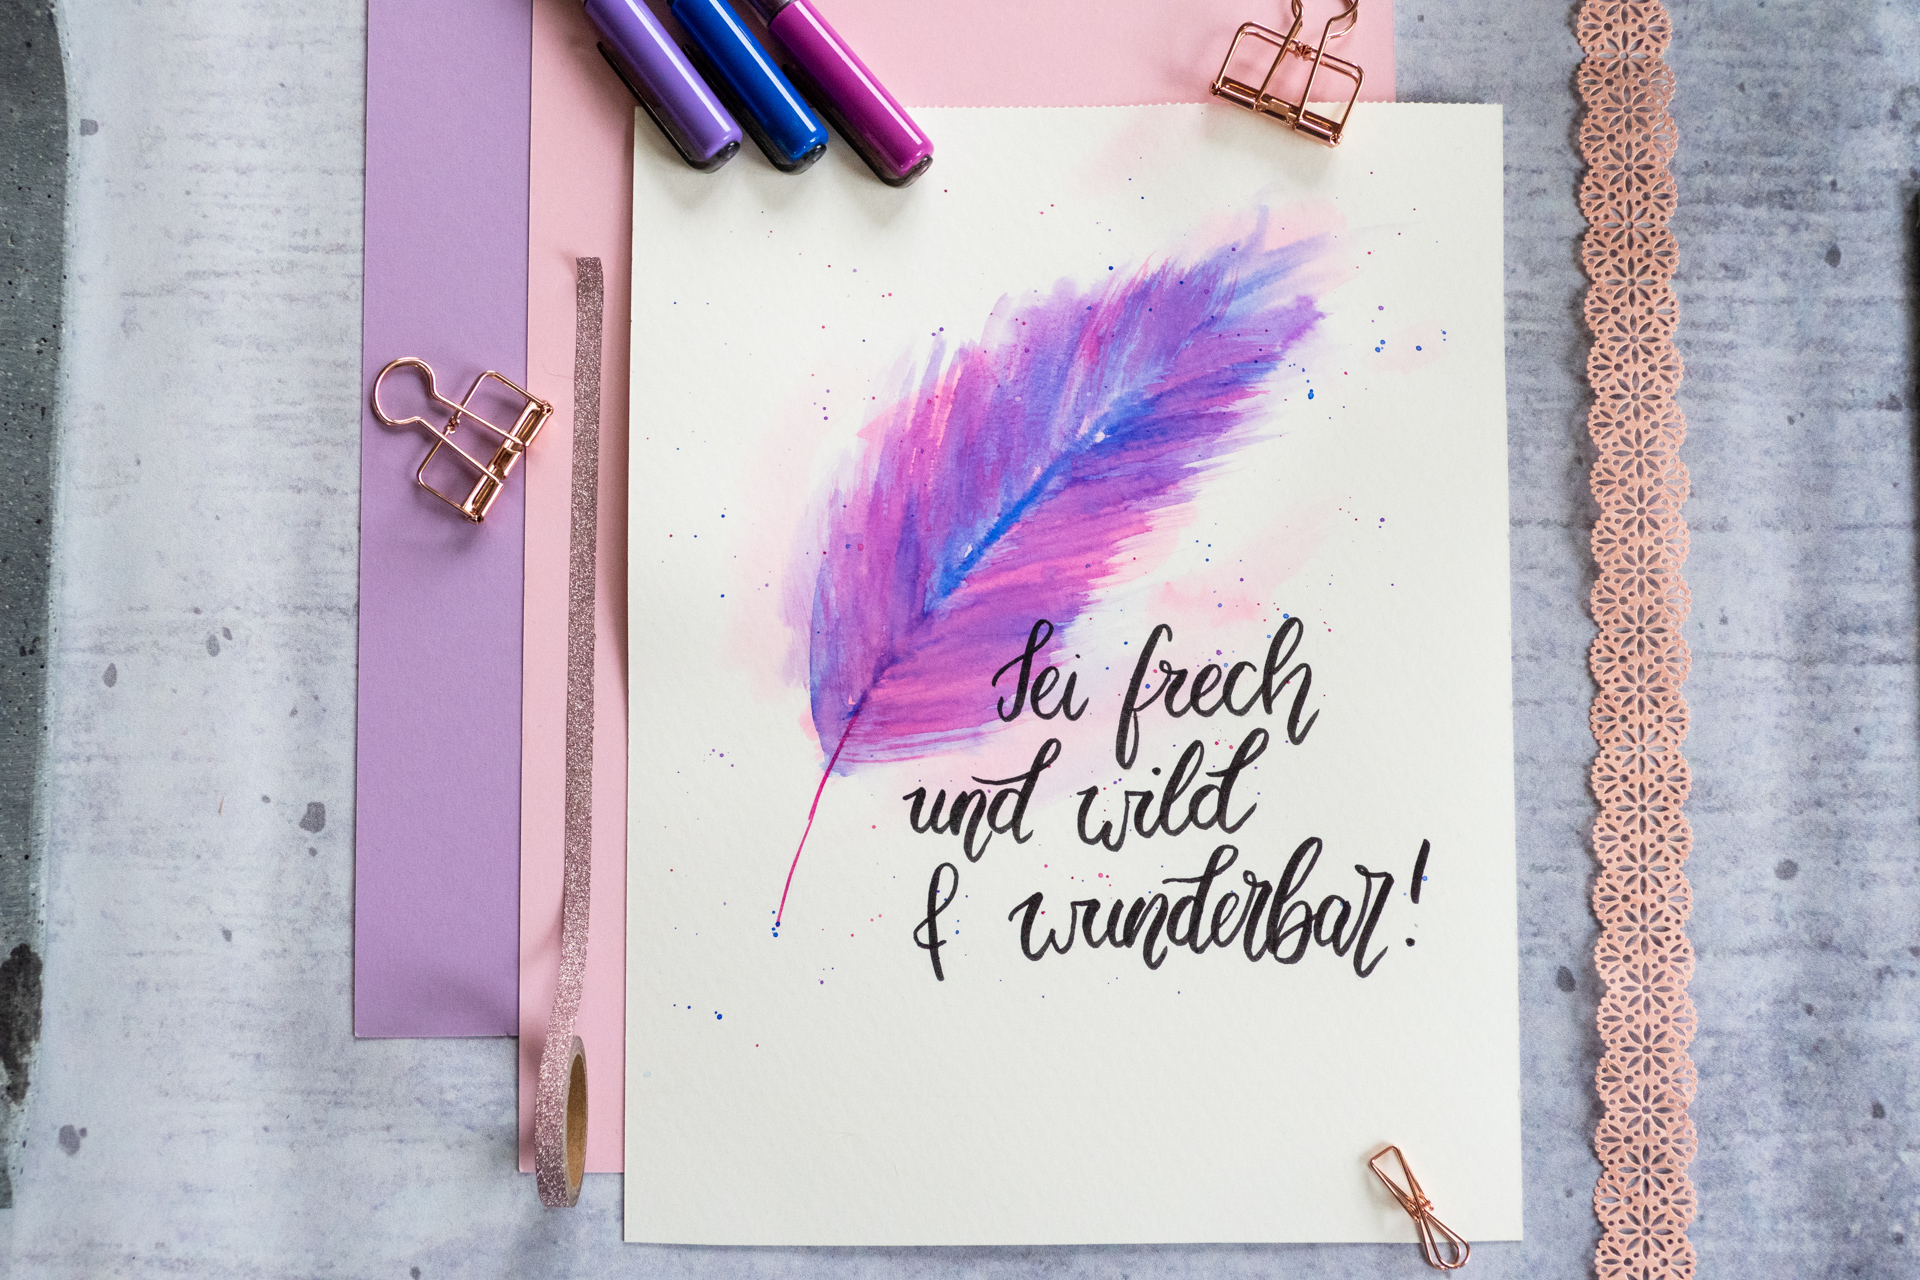 Spruch "Sei frech und wild und wunderbar" mit schwarzem Brushpen geschrieben. Im Hintergrund ist eine Feder im "Watercolor-Style" in den Farben blau und lila.